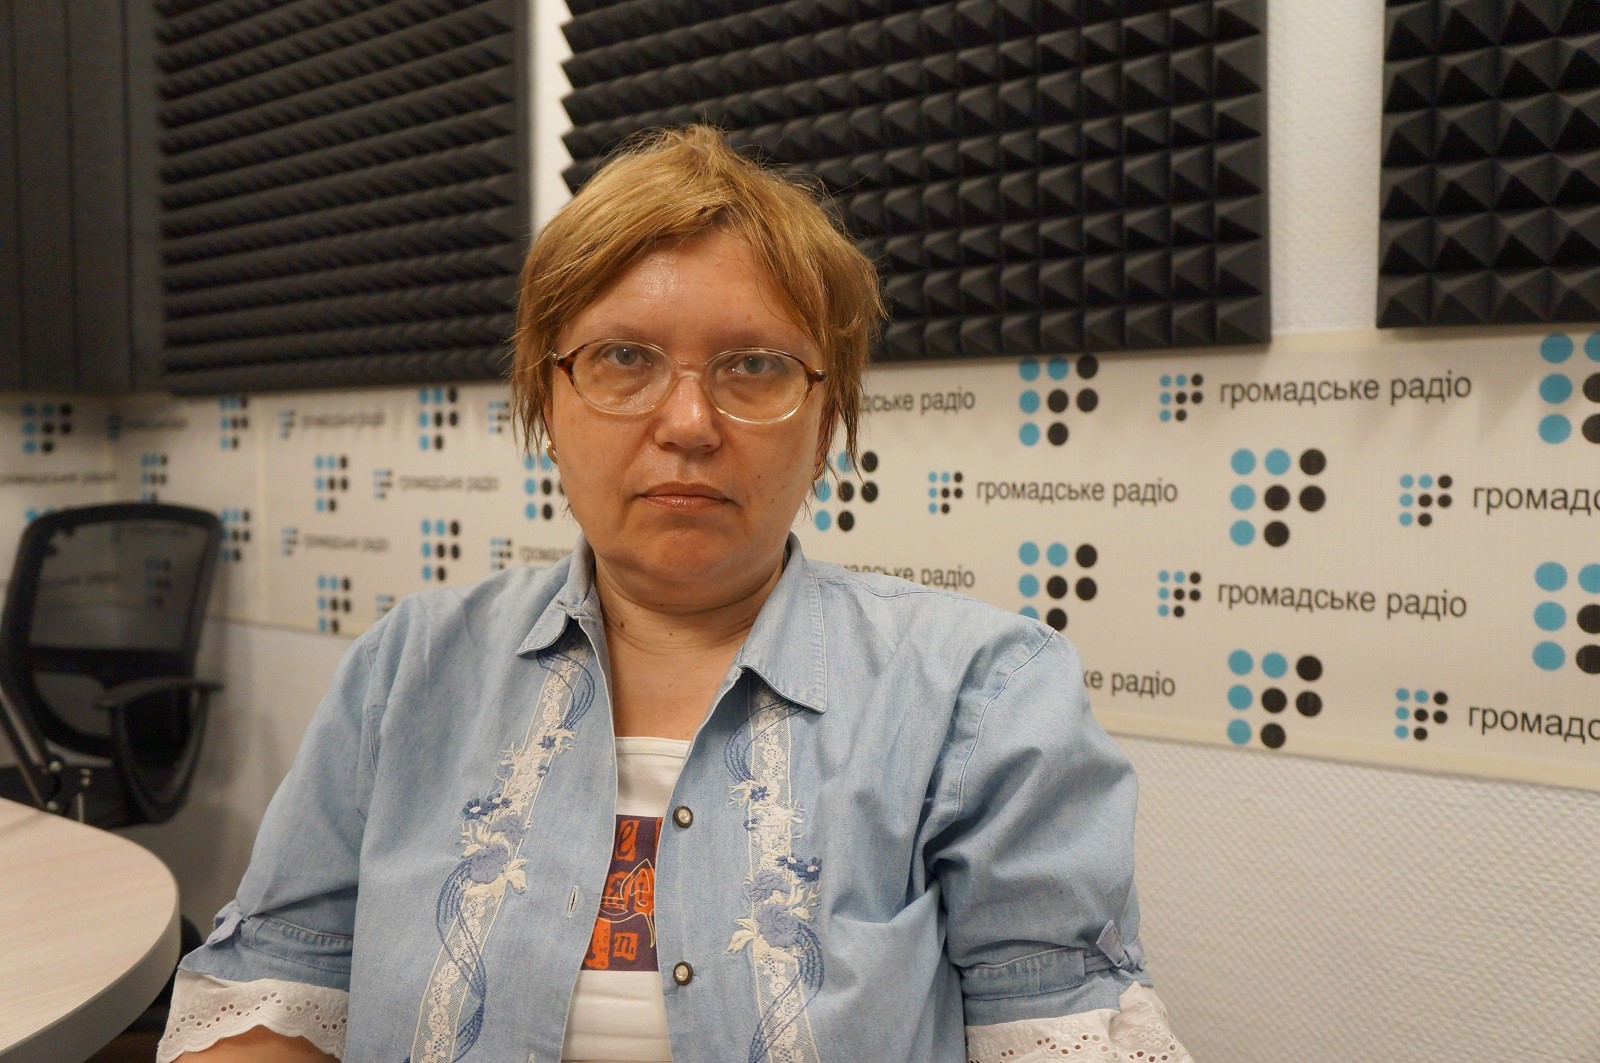 Вчитель, який вчить, має бути порушником вказівок: Ірина Єгорченко про освіту, науку й псевдонауку